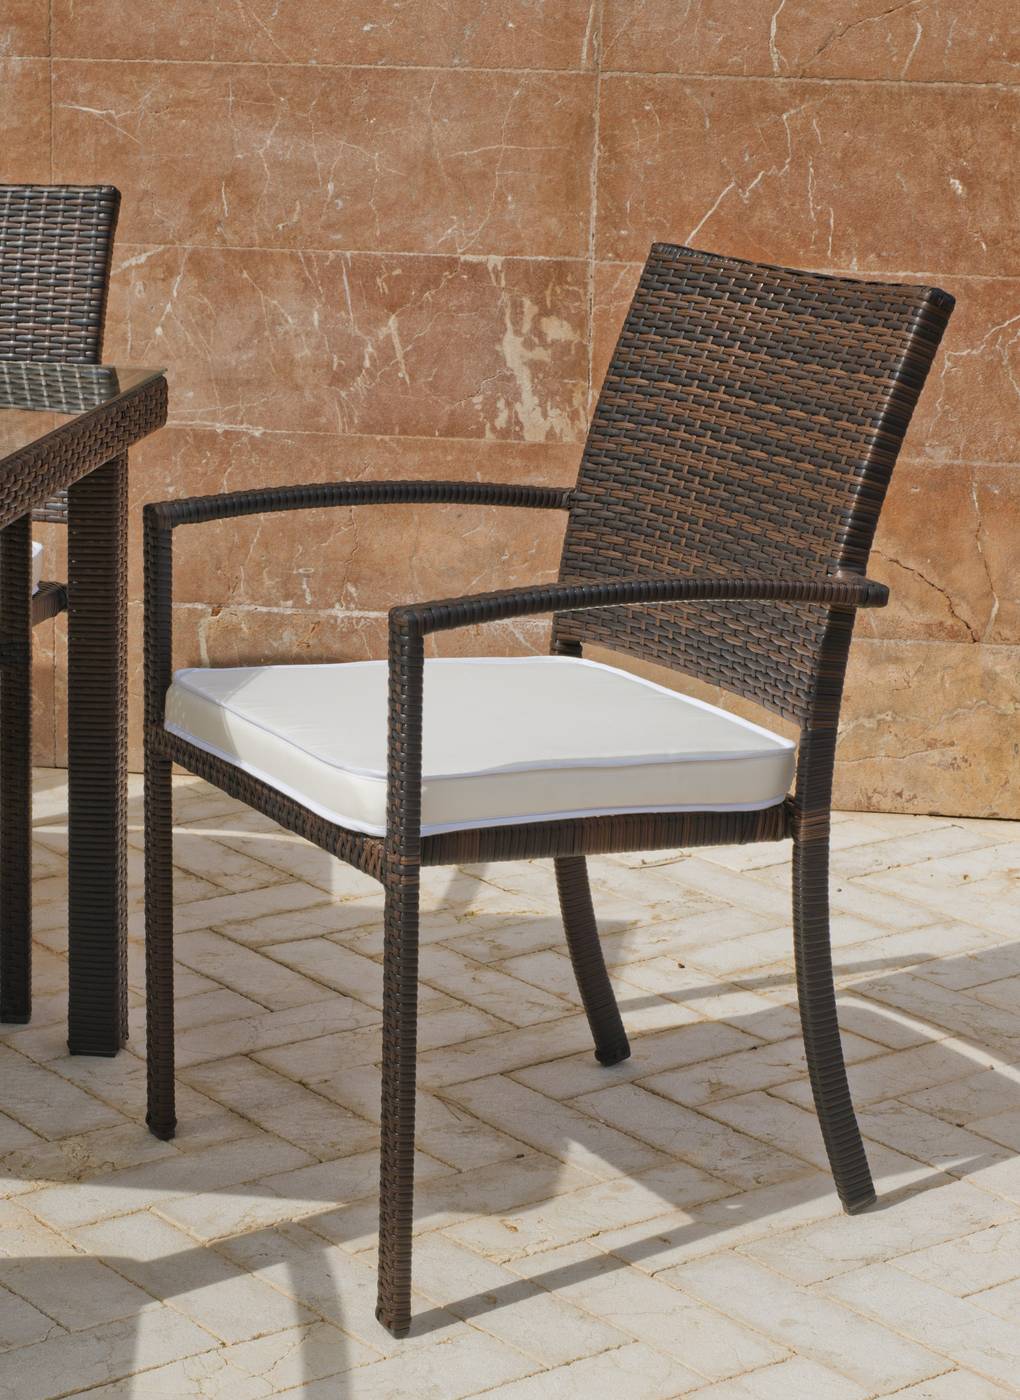 Conjunto Mosaico Estela90-Bahia - Conjunto de forja color marrón: mesa con tablero mosaico de 90 cm + 4 sillones de ratán sintético con cojines.